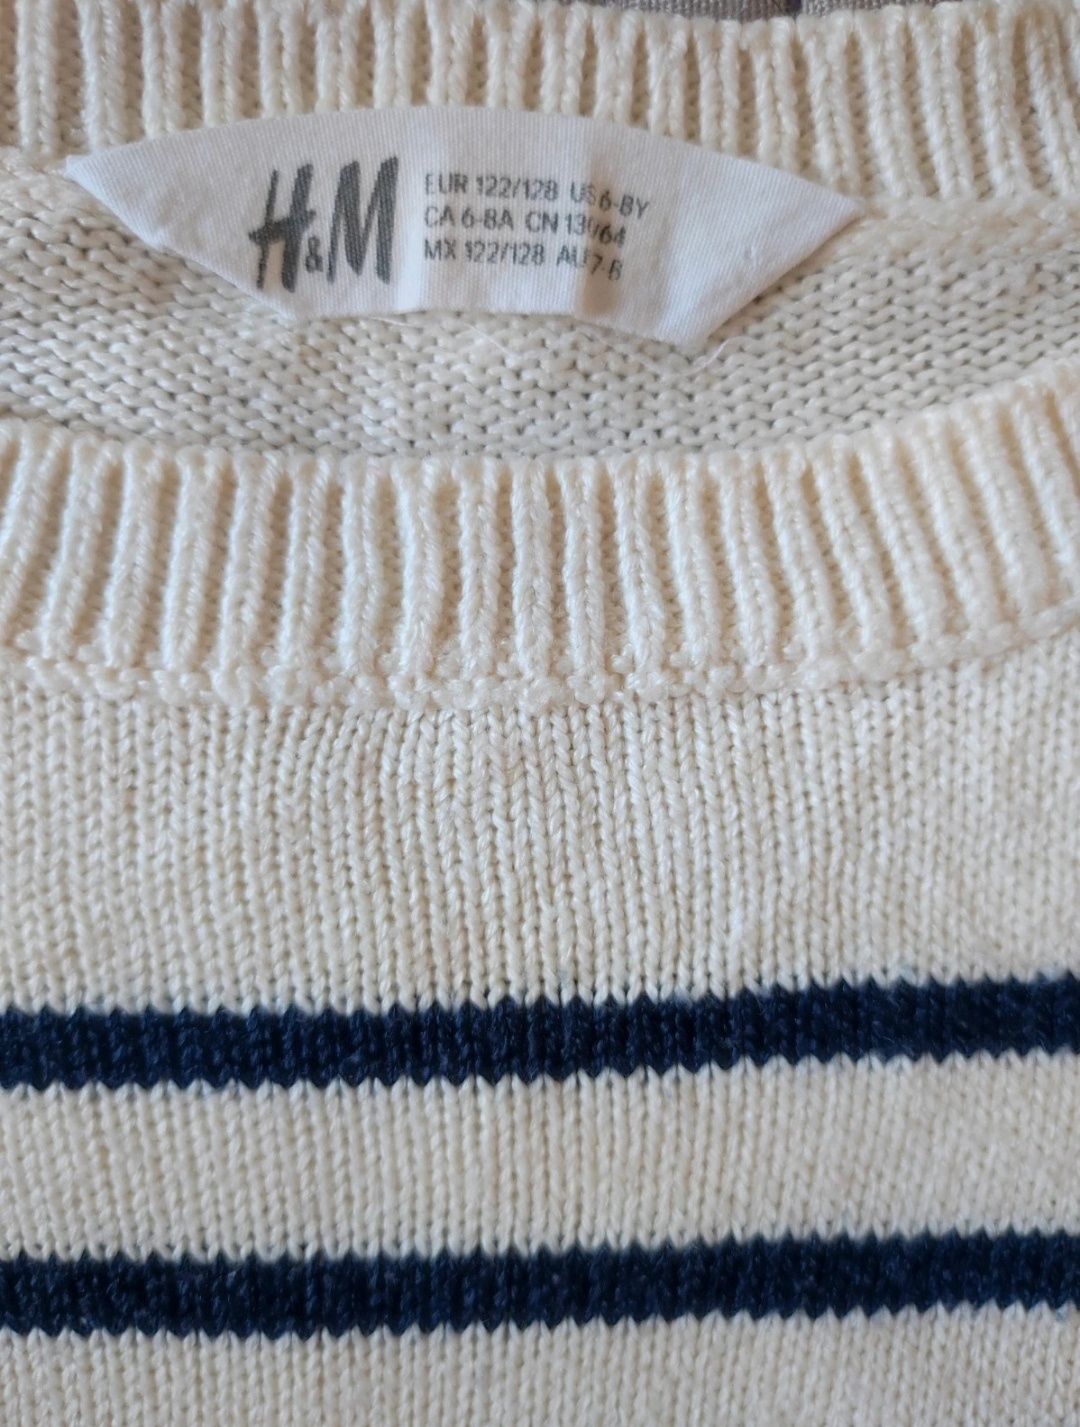 Sweterek kremowy paski granatowe elegancki modny H&M r.122/128 6-8lat